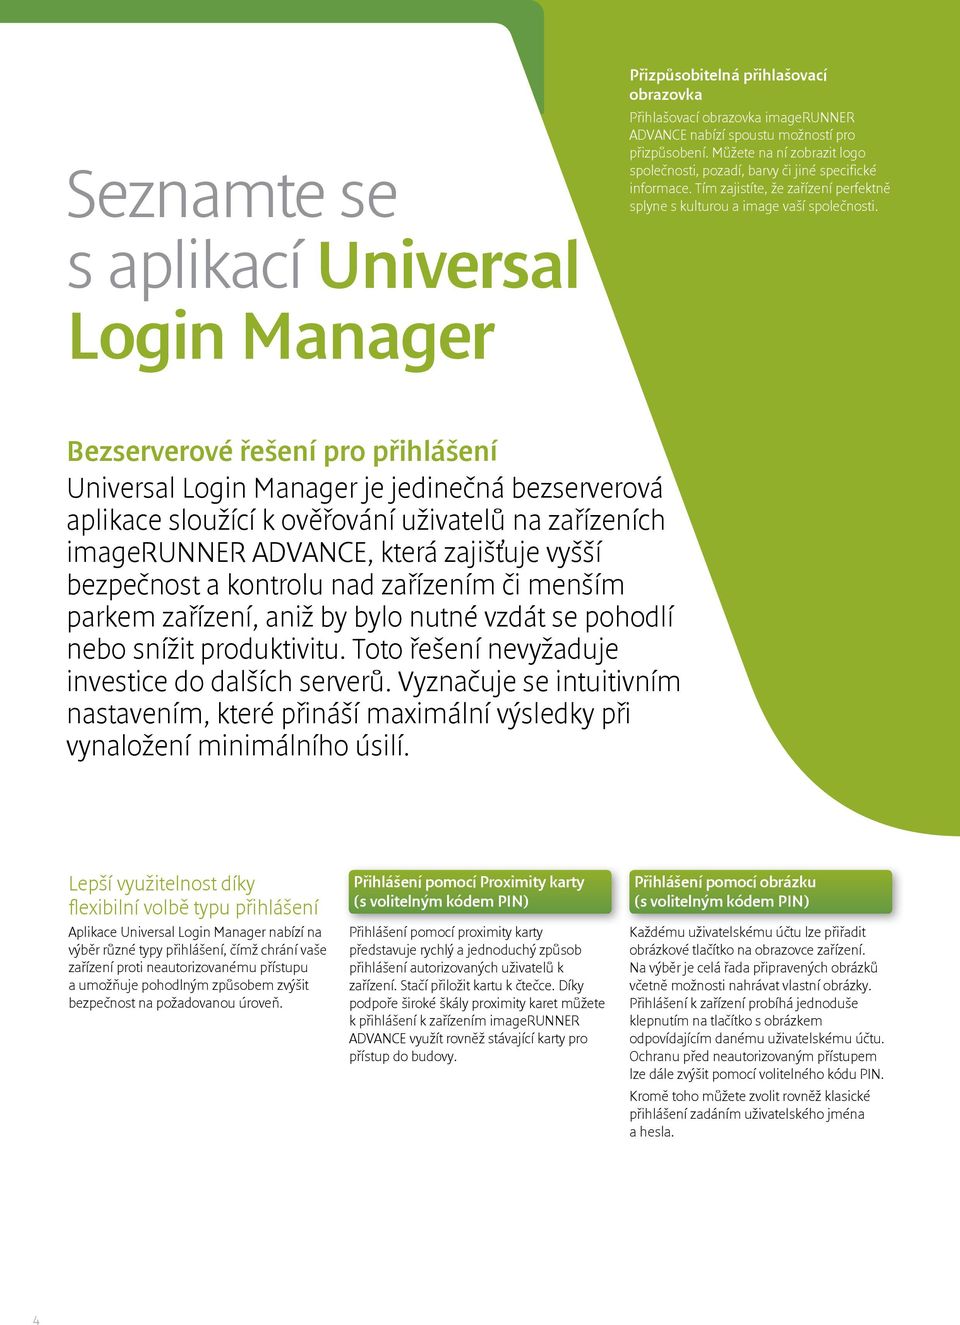 Bezserverové řešení pro přihlášení Universal Login Manager je jedinečná bezserverová aplikace sloužící k ověřování uživatelů na zařízeních imagerunner ADVANCE, která zajišťuje vyšší bezpečnost a